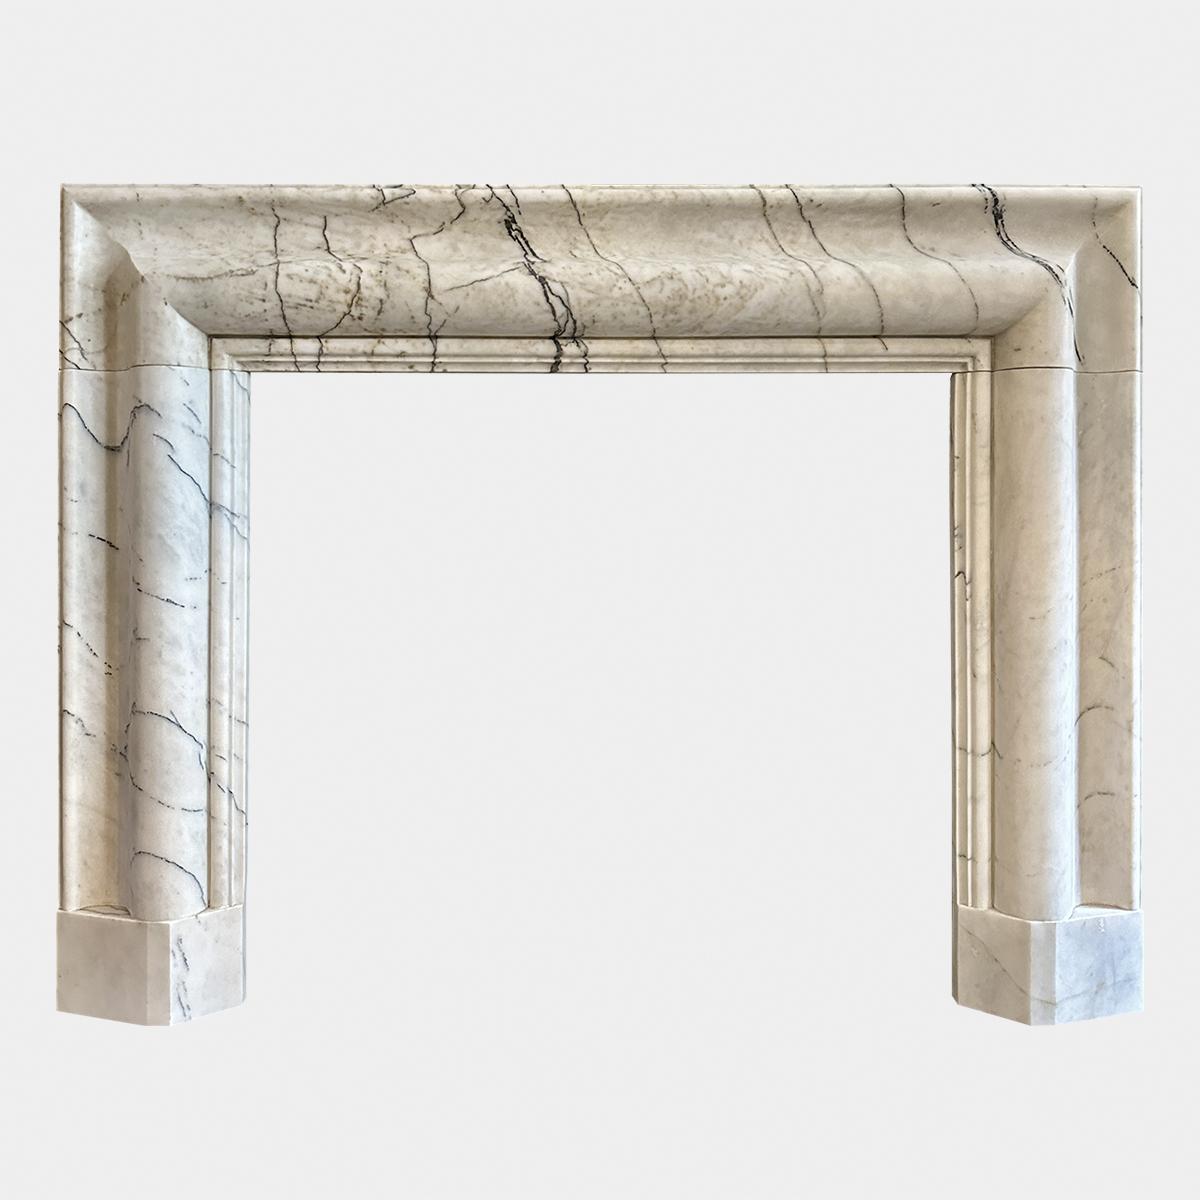 Ein großer, massiver Bolection-Kamin aus einer Variante des Carrara-Marmors, bekannt als Calacatta Vagli. Großzügige Leisten, die einen breiten Rahmen und eine Kopfleiste mit geschnitztem Innenslip ergeben. Steht auf geformten Fußblöcken. Qualitativ